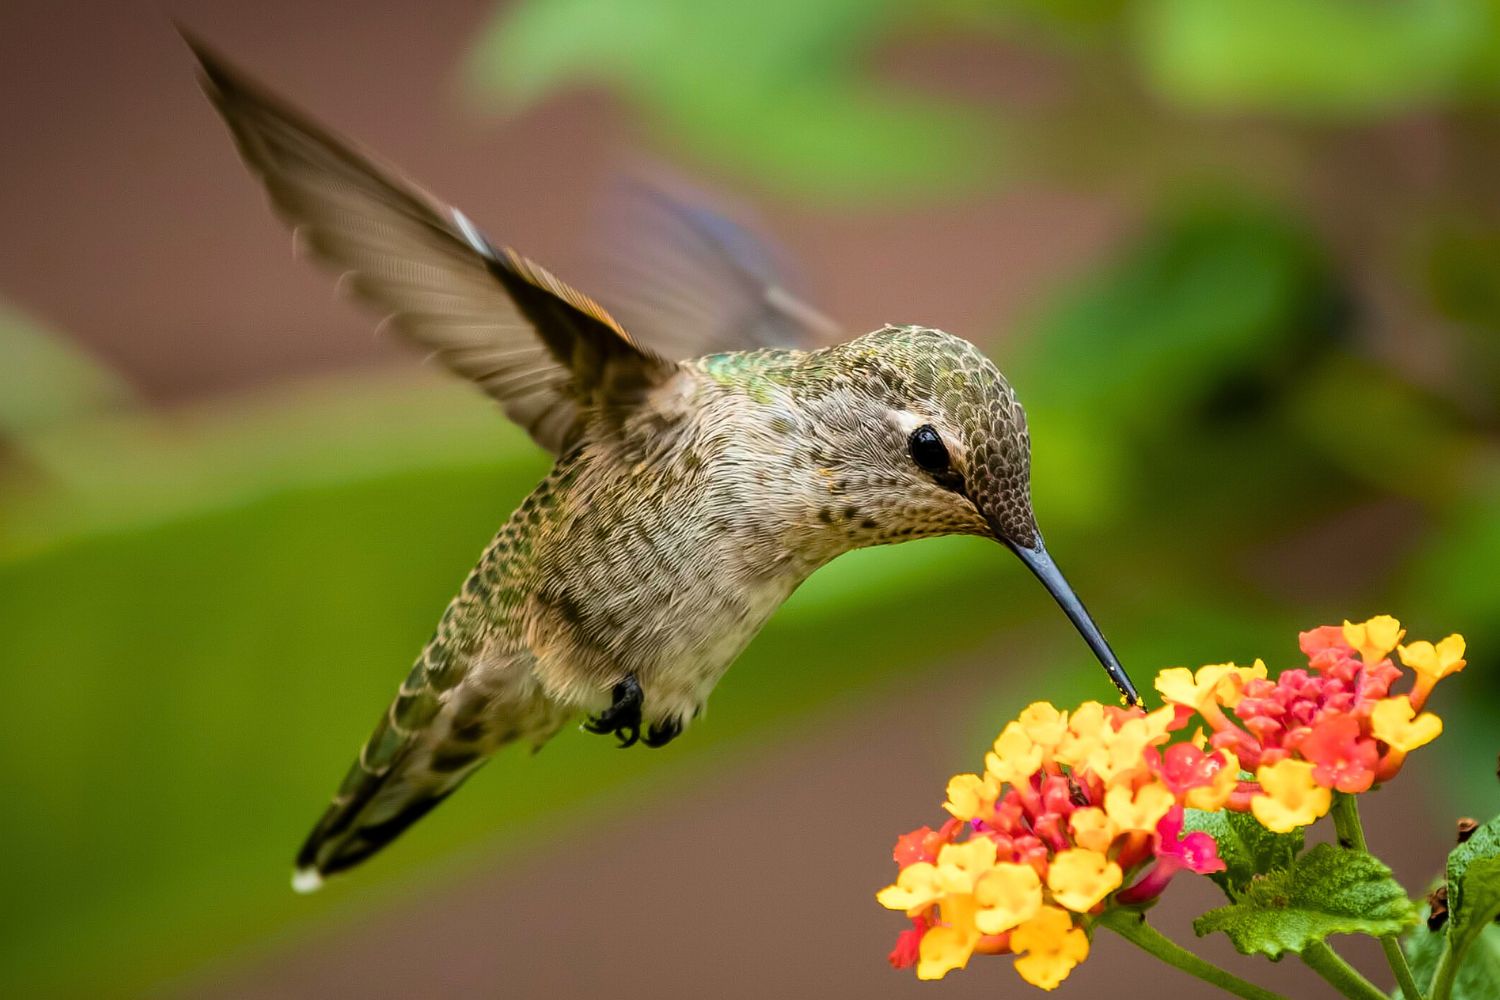 2. The flight of hummingbirds